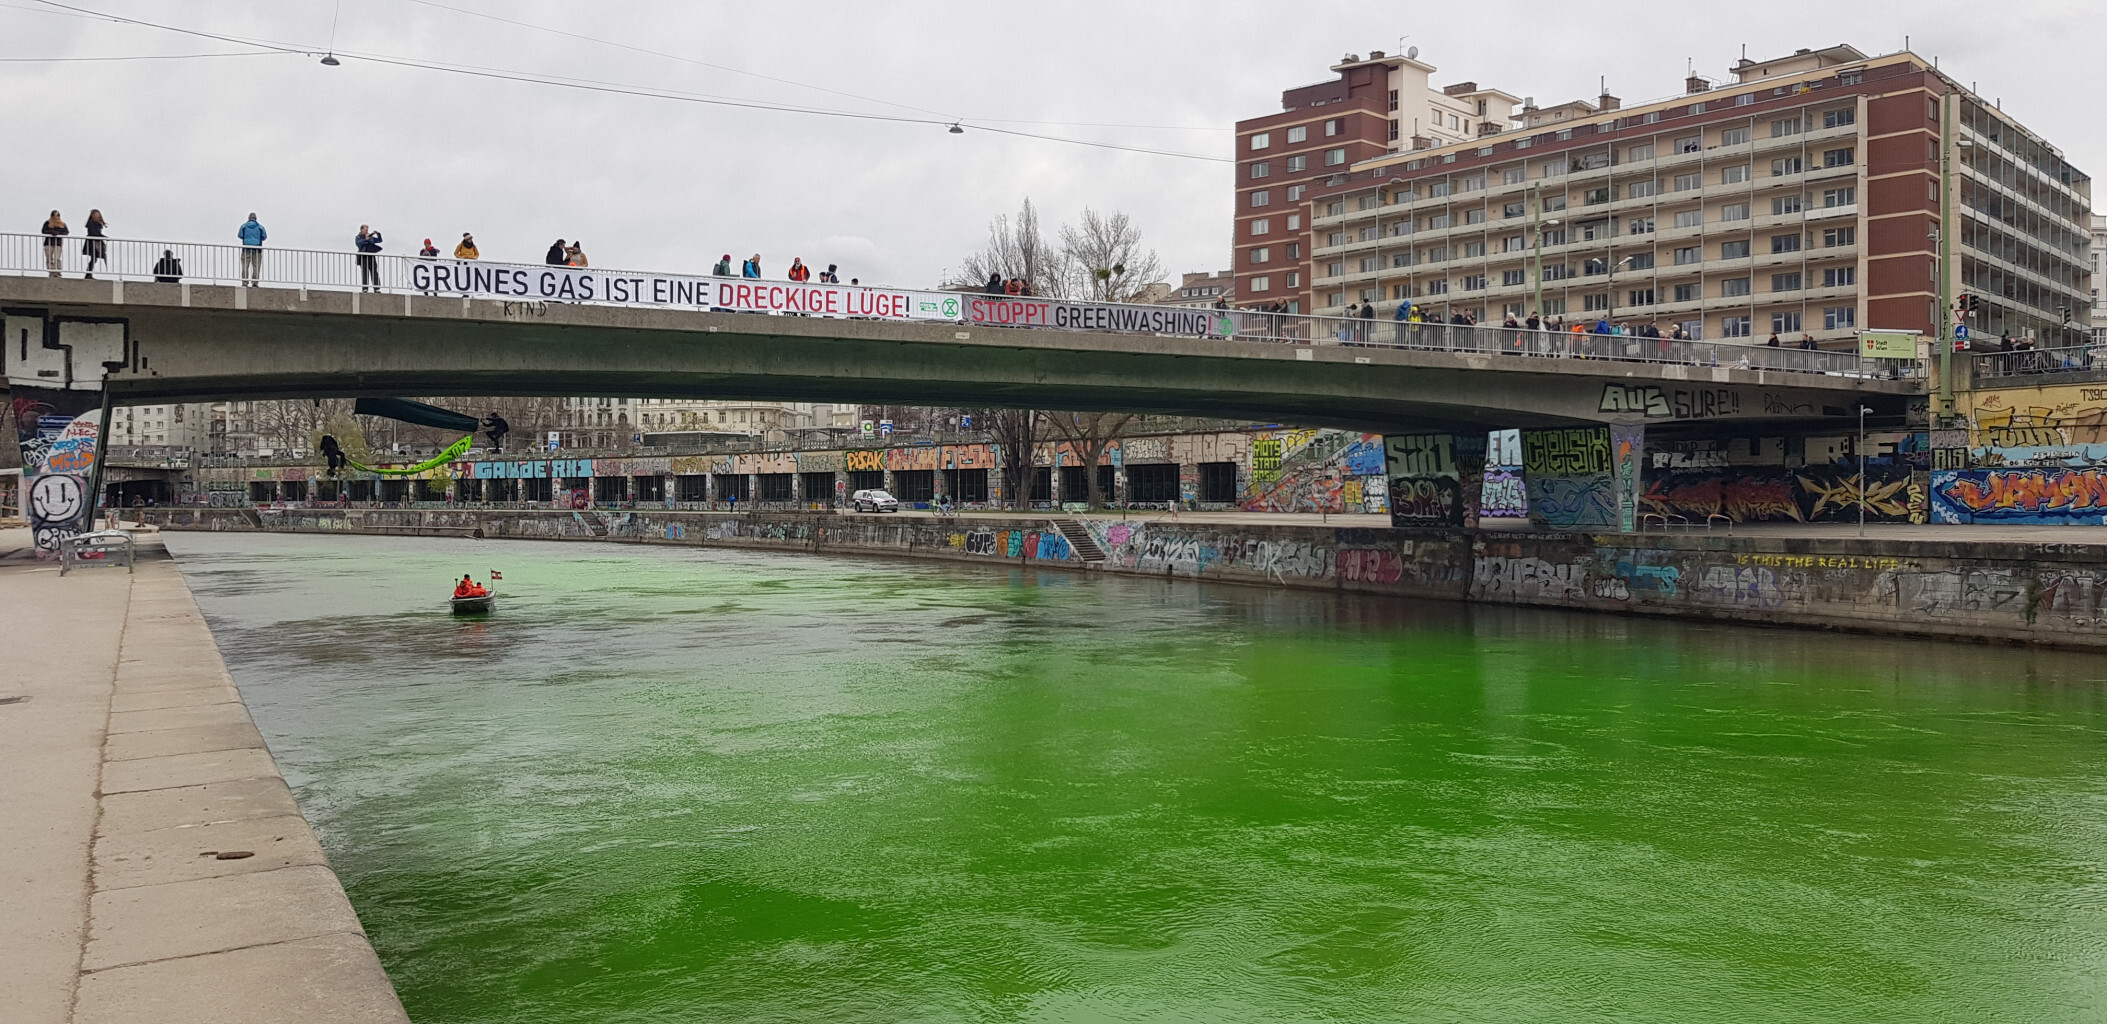 Die angekündigten Proteste gegen die am Montag in Wien beginnende Europäische Gas-Konferenz haben begonnen. Zu Mittag blockierte eine Gruppe der „Extinction Rebellion“ die Salztorbrücke in der Wiener Innenstadt und färbte den Donaukanal grün.